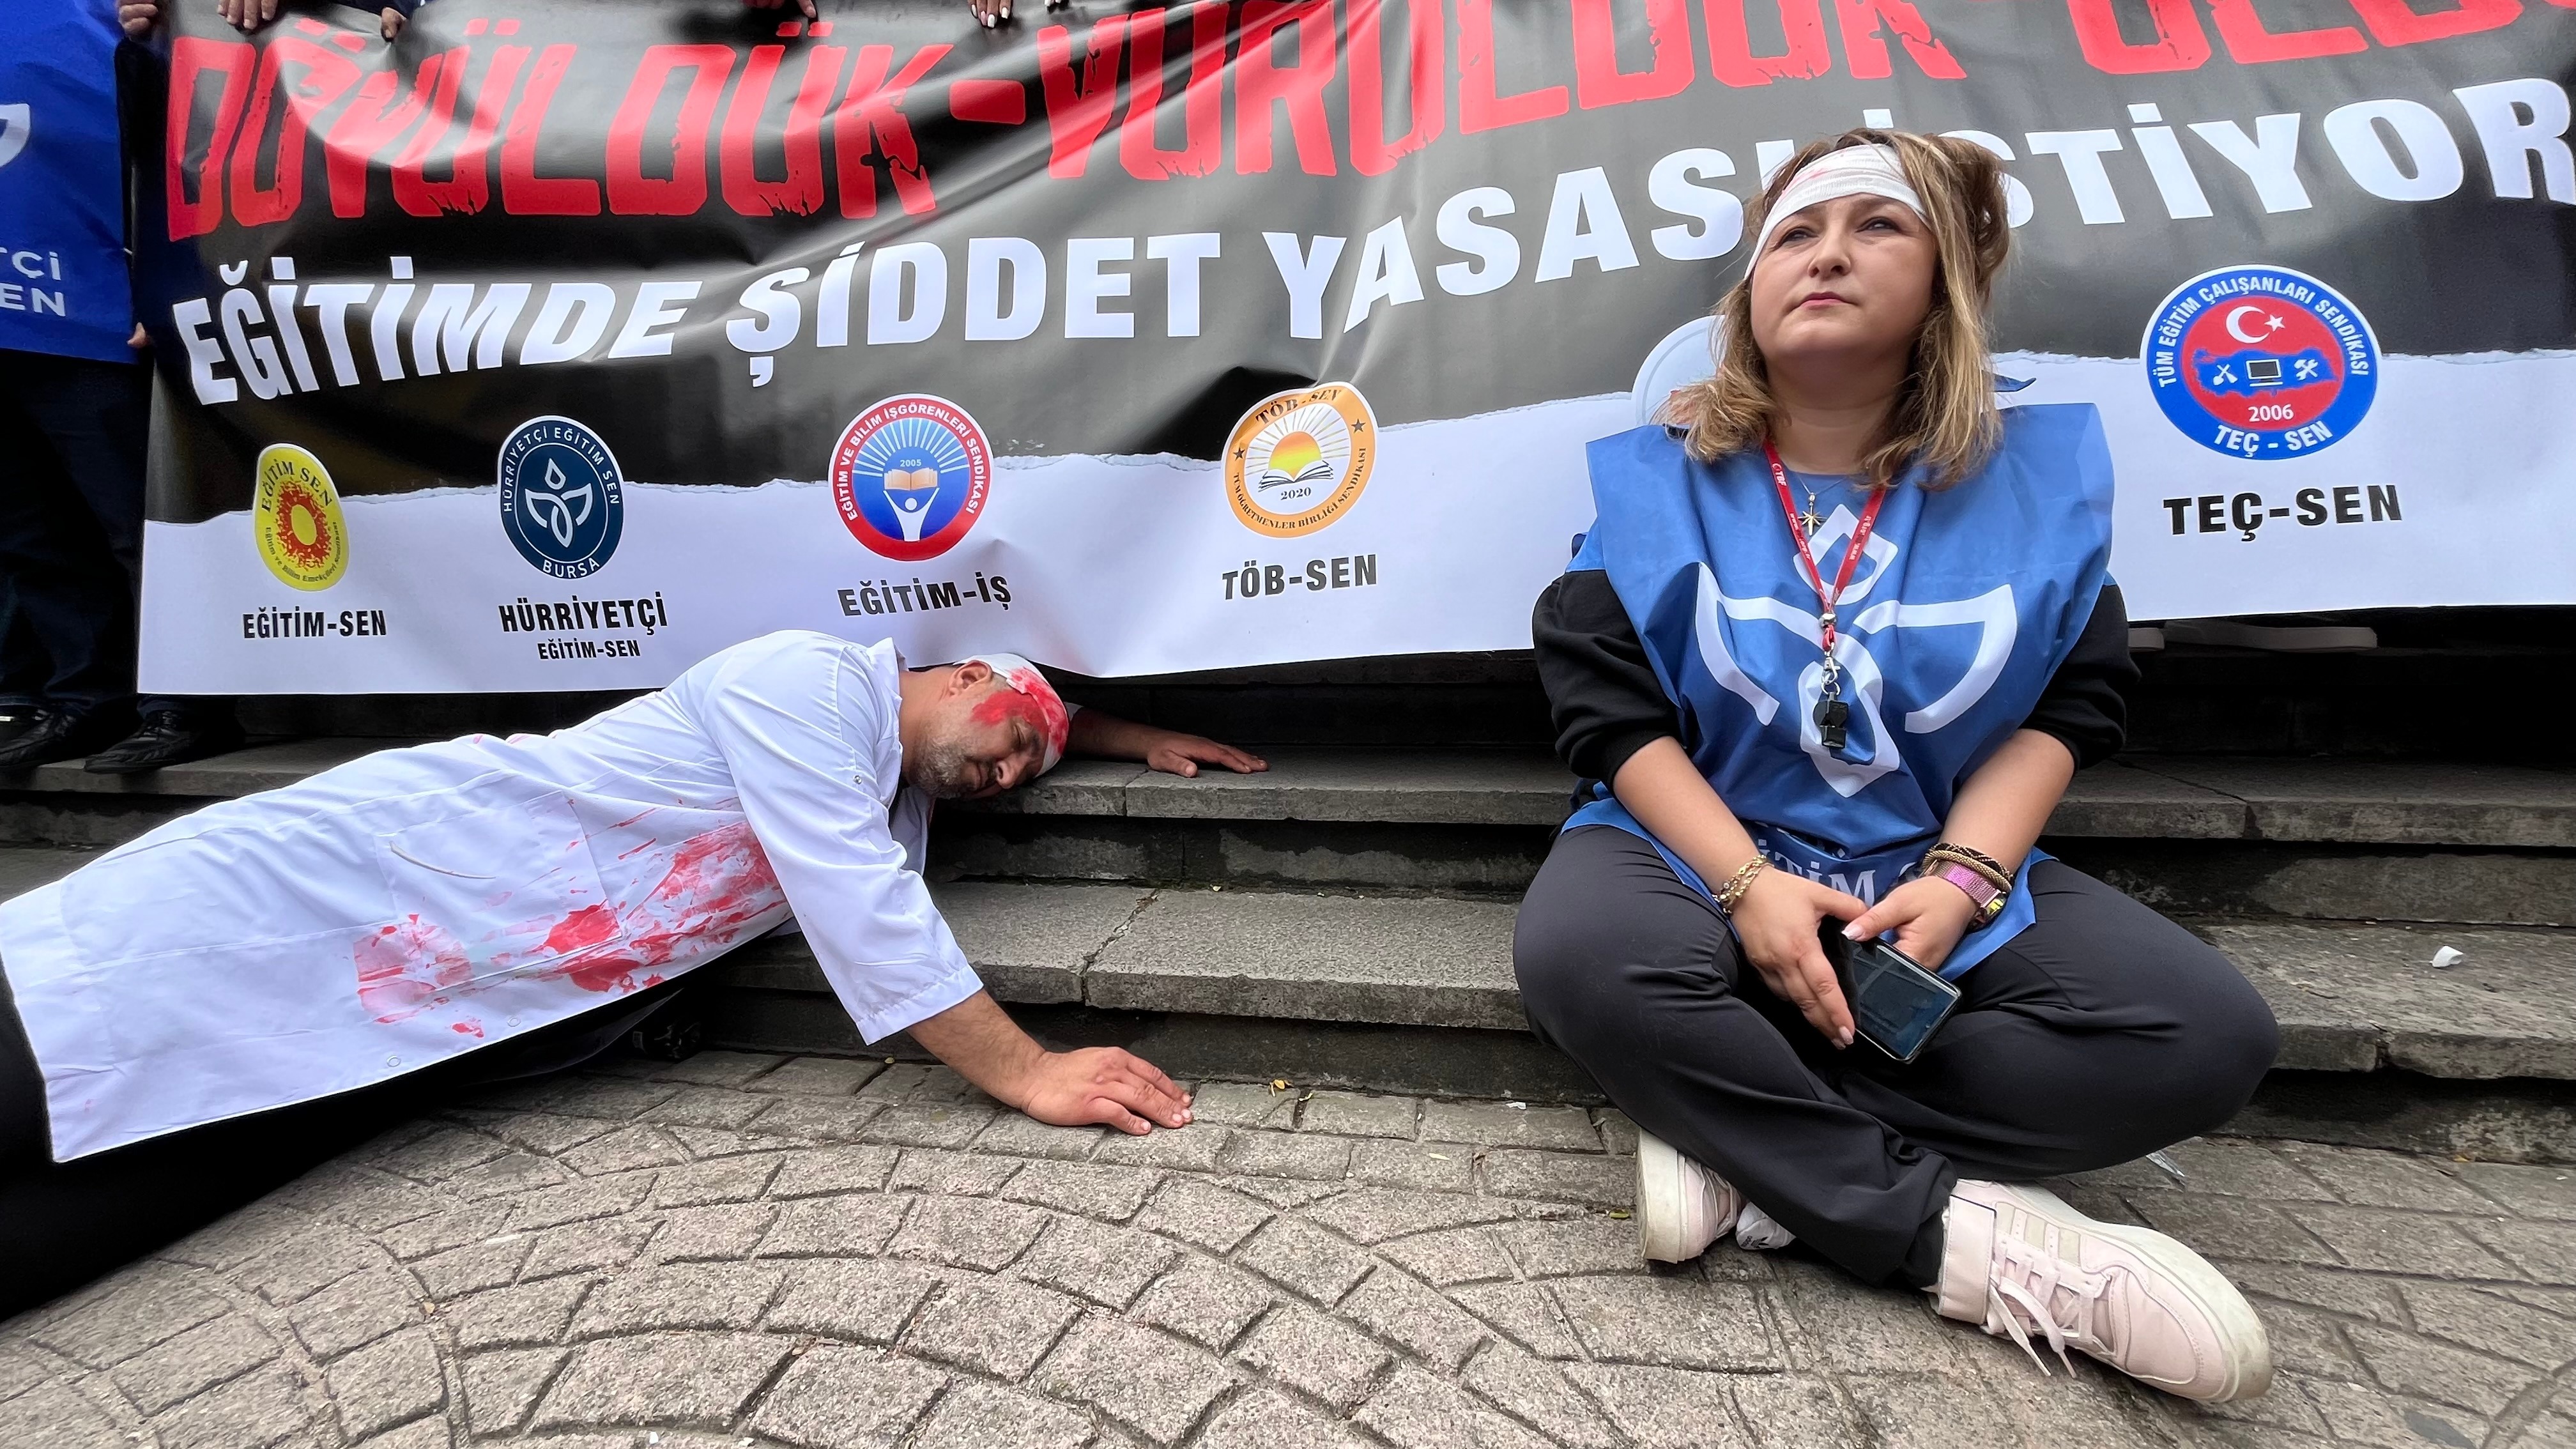 Bursa'da eğitimciler 2 ayrı yürüyüşle şiddeti protesto etti; önlüklerine ve yüzlerine kırmızıya boyadılar